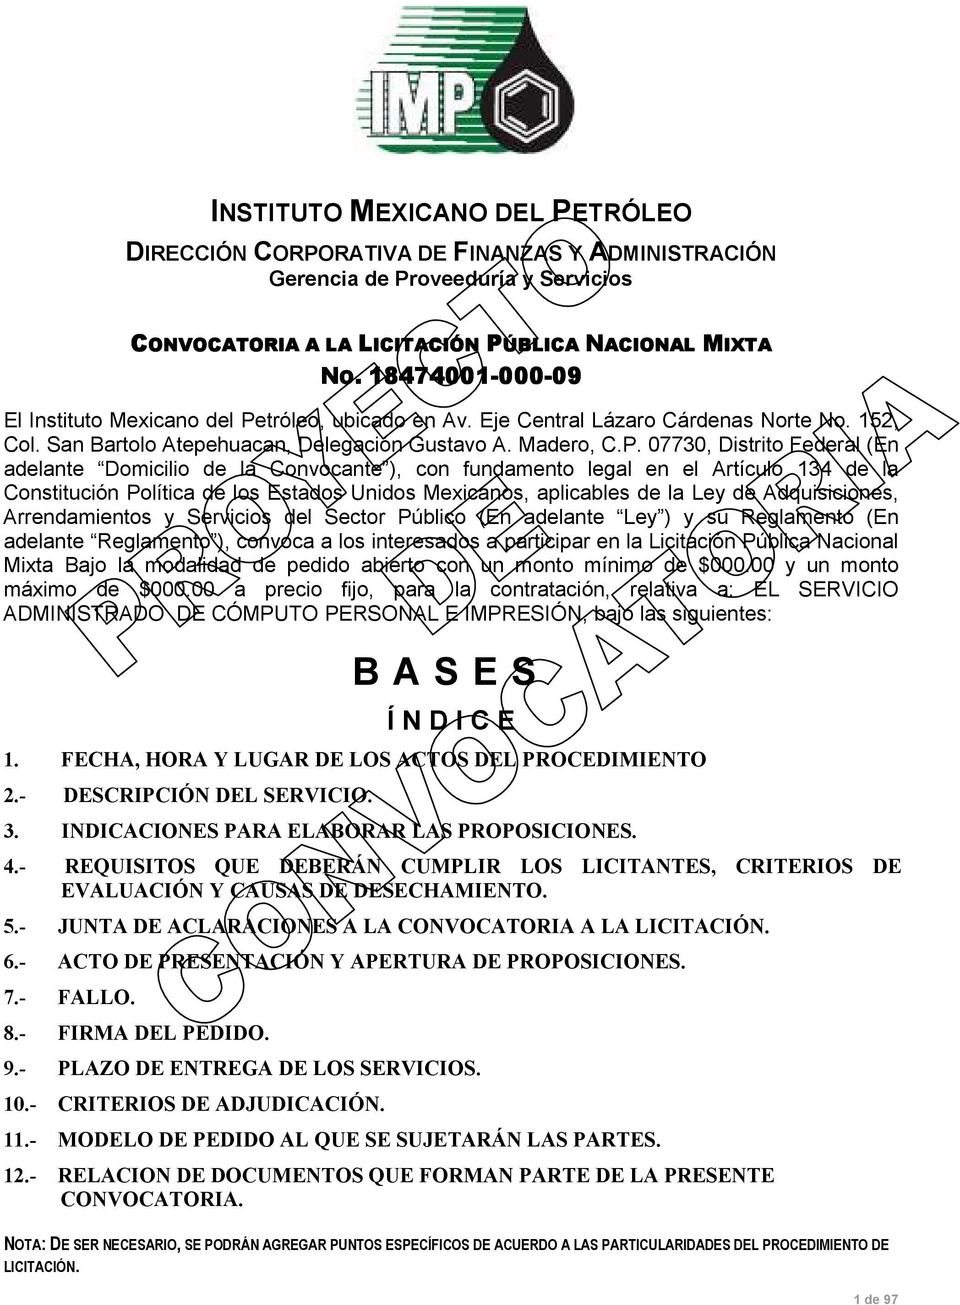 tróleo, ubicado en Av. Eje Central Lázaro Cárdenas Norte No. 152, Col. San Bartolo Atepehuacan, Delegación Gustavo A. Madero, C.P.